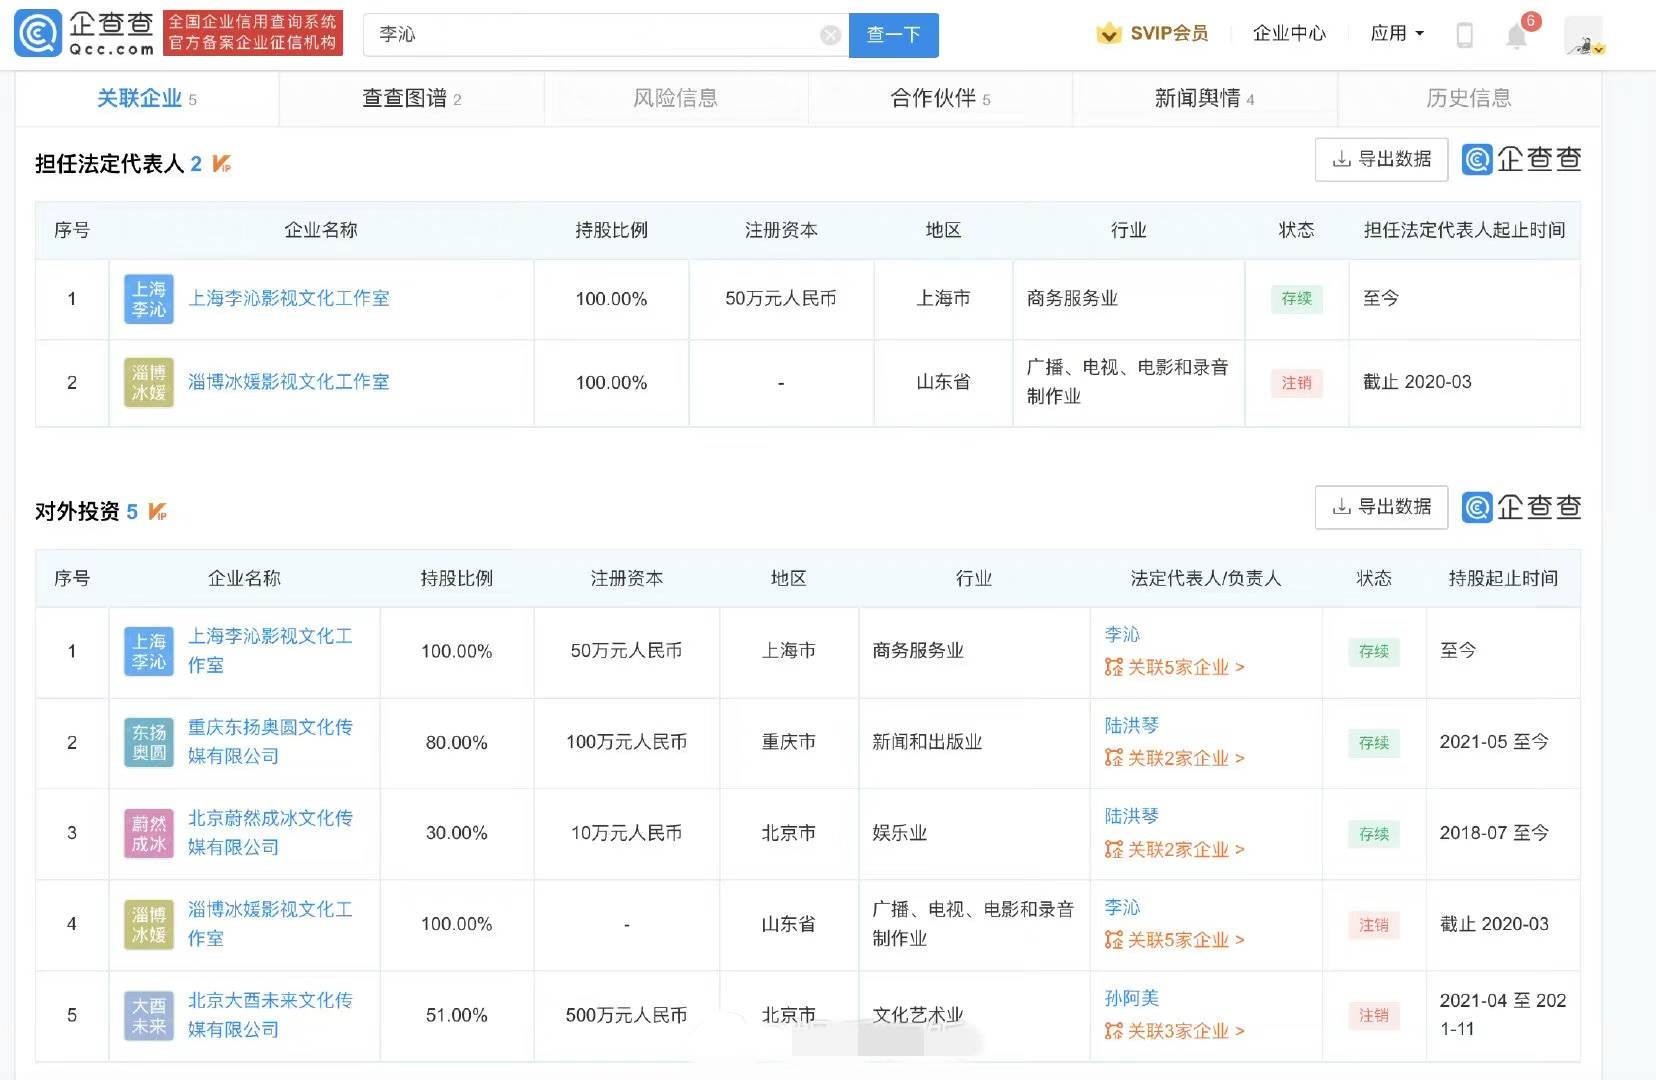 李沁在重庆东扬奥圆文化传媒有限公司的持股比例增加